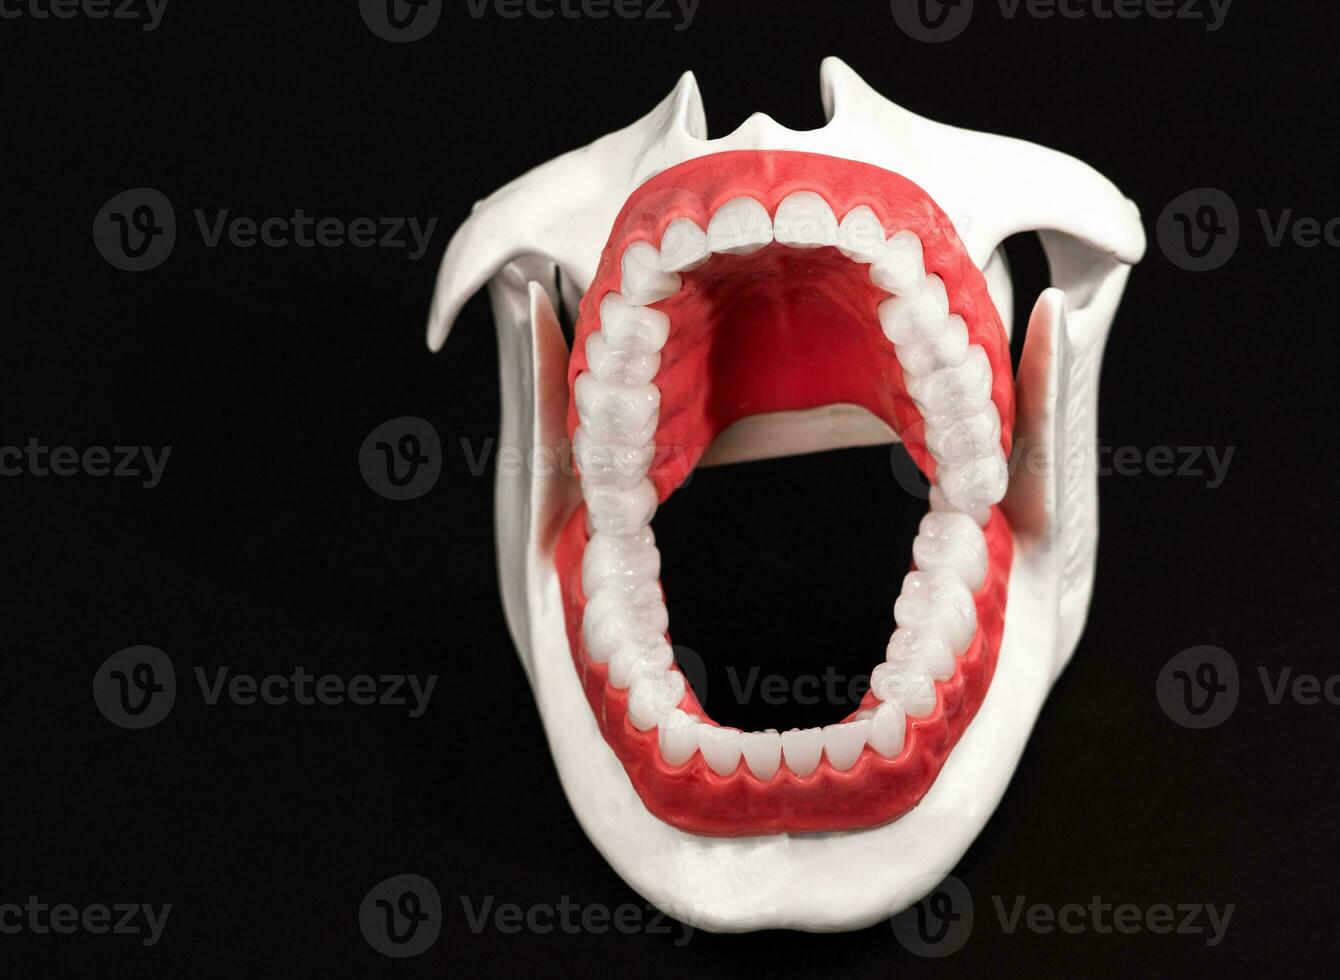 Mensch Kiefer mit Zähne und Zahnfleisch Anatomie Modell- isoliert auf schwarz Hintergrund. geöffnet Kiefer Position. gesund Zähne, Dental Pflege, und kieferorthopädisch medizinisch Gesundheitswesen Konzept. foto